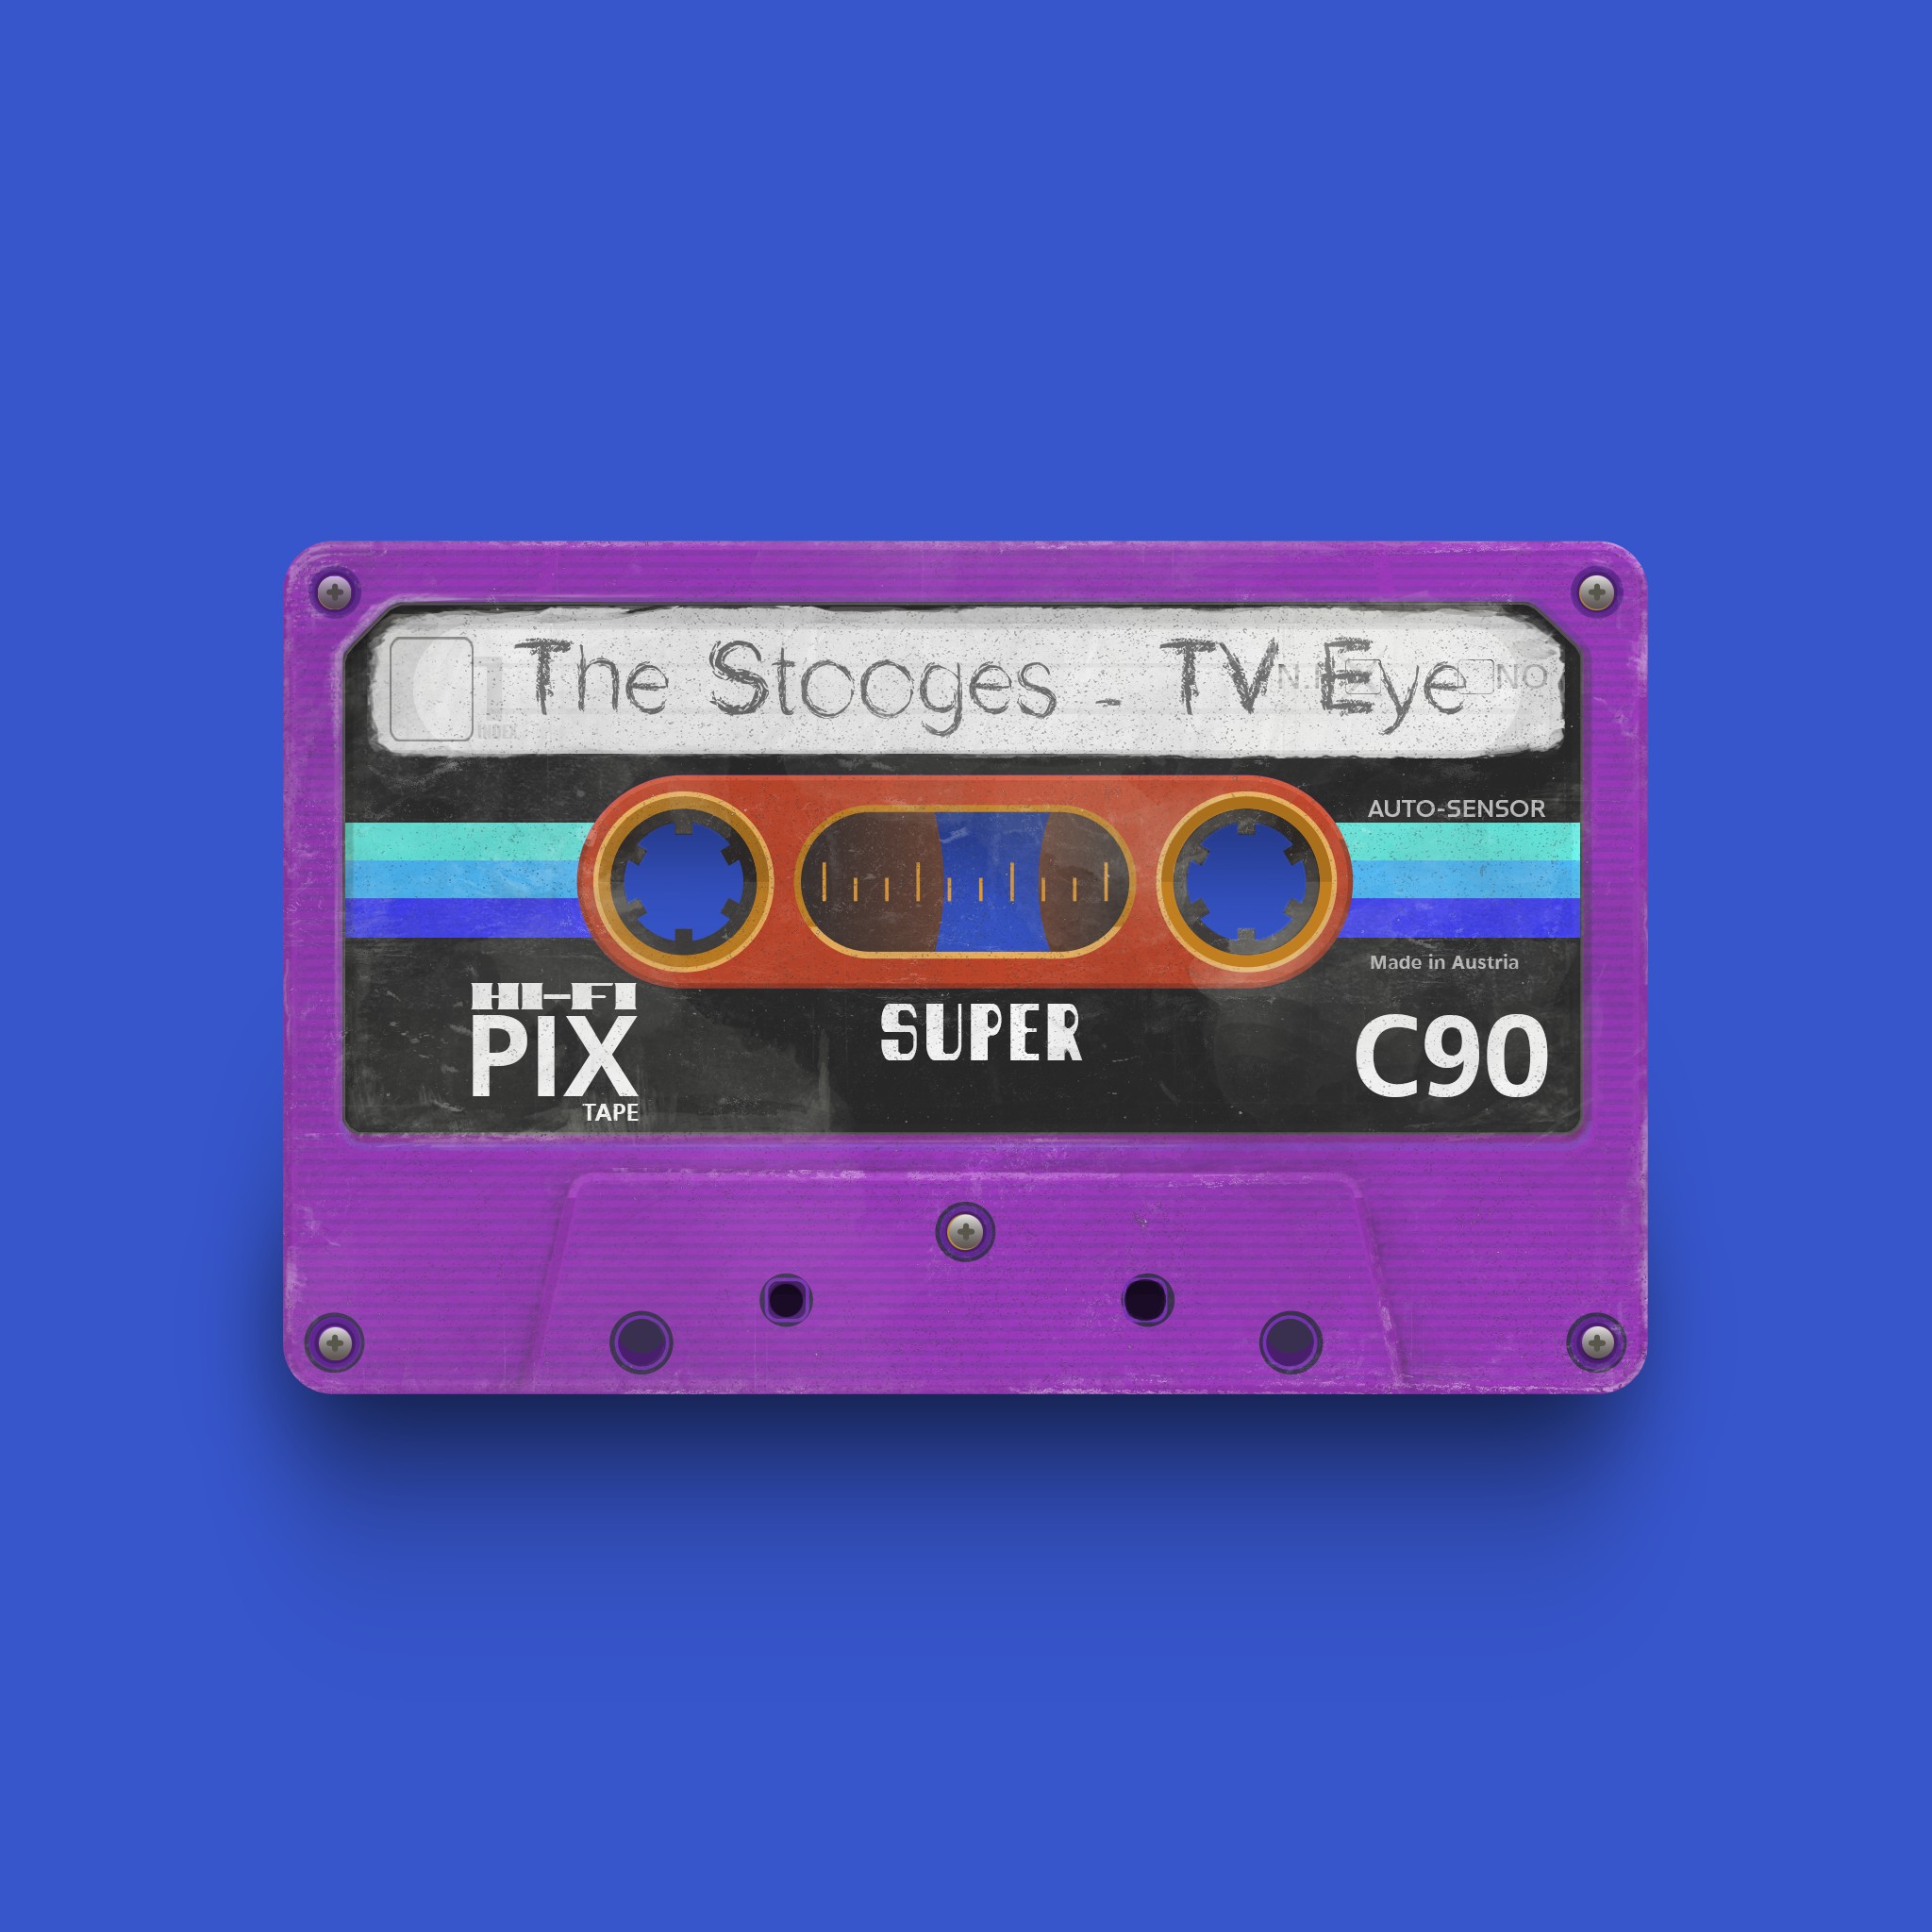 PixTape #6158 | The Stooges - TV Eye